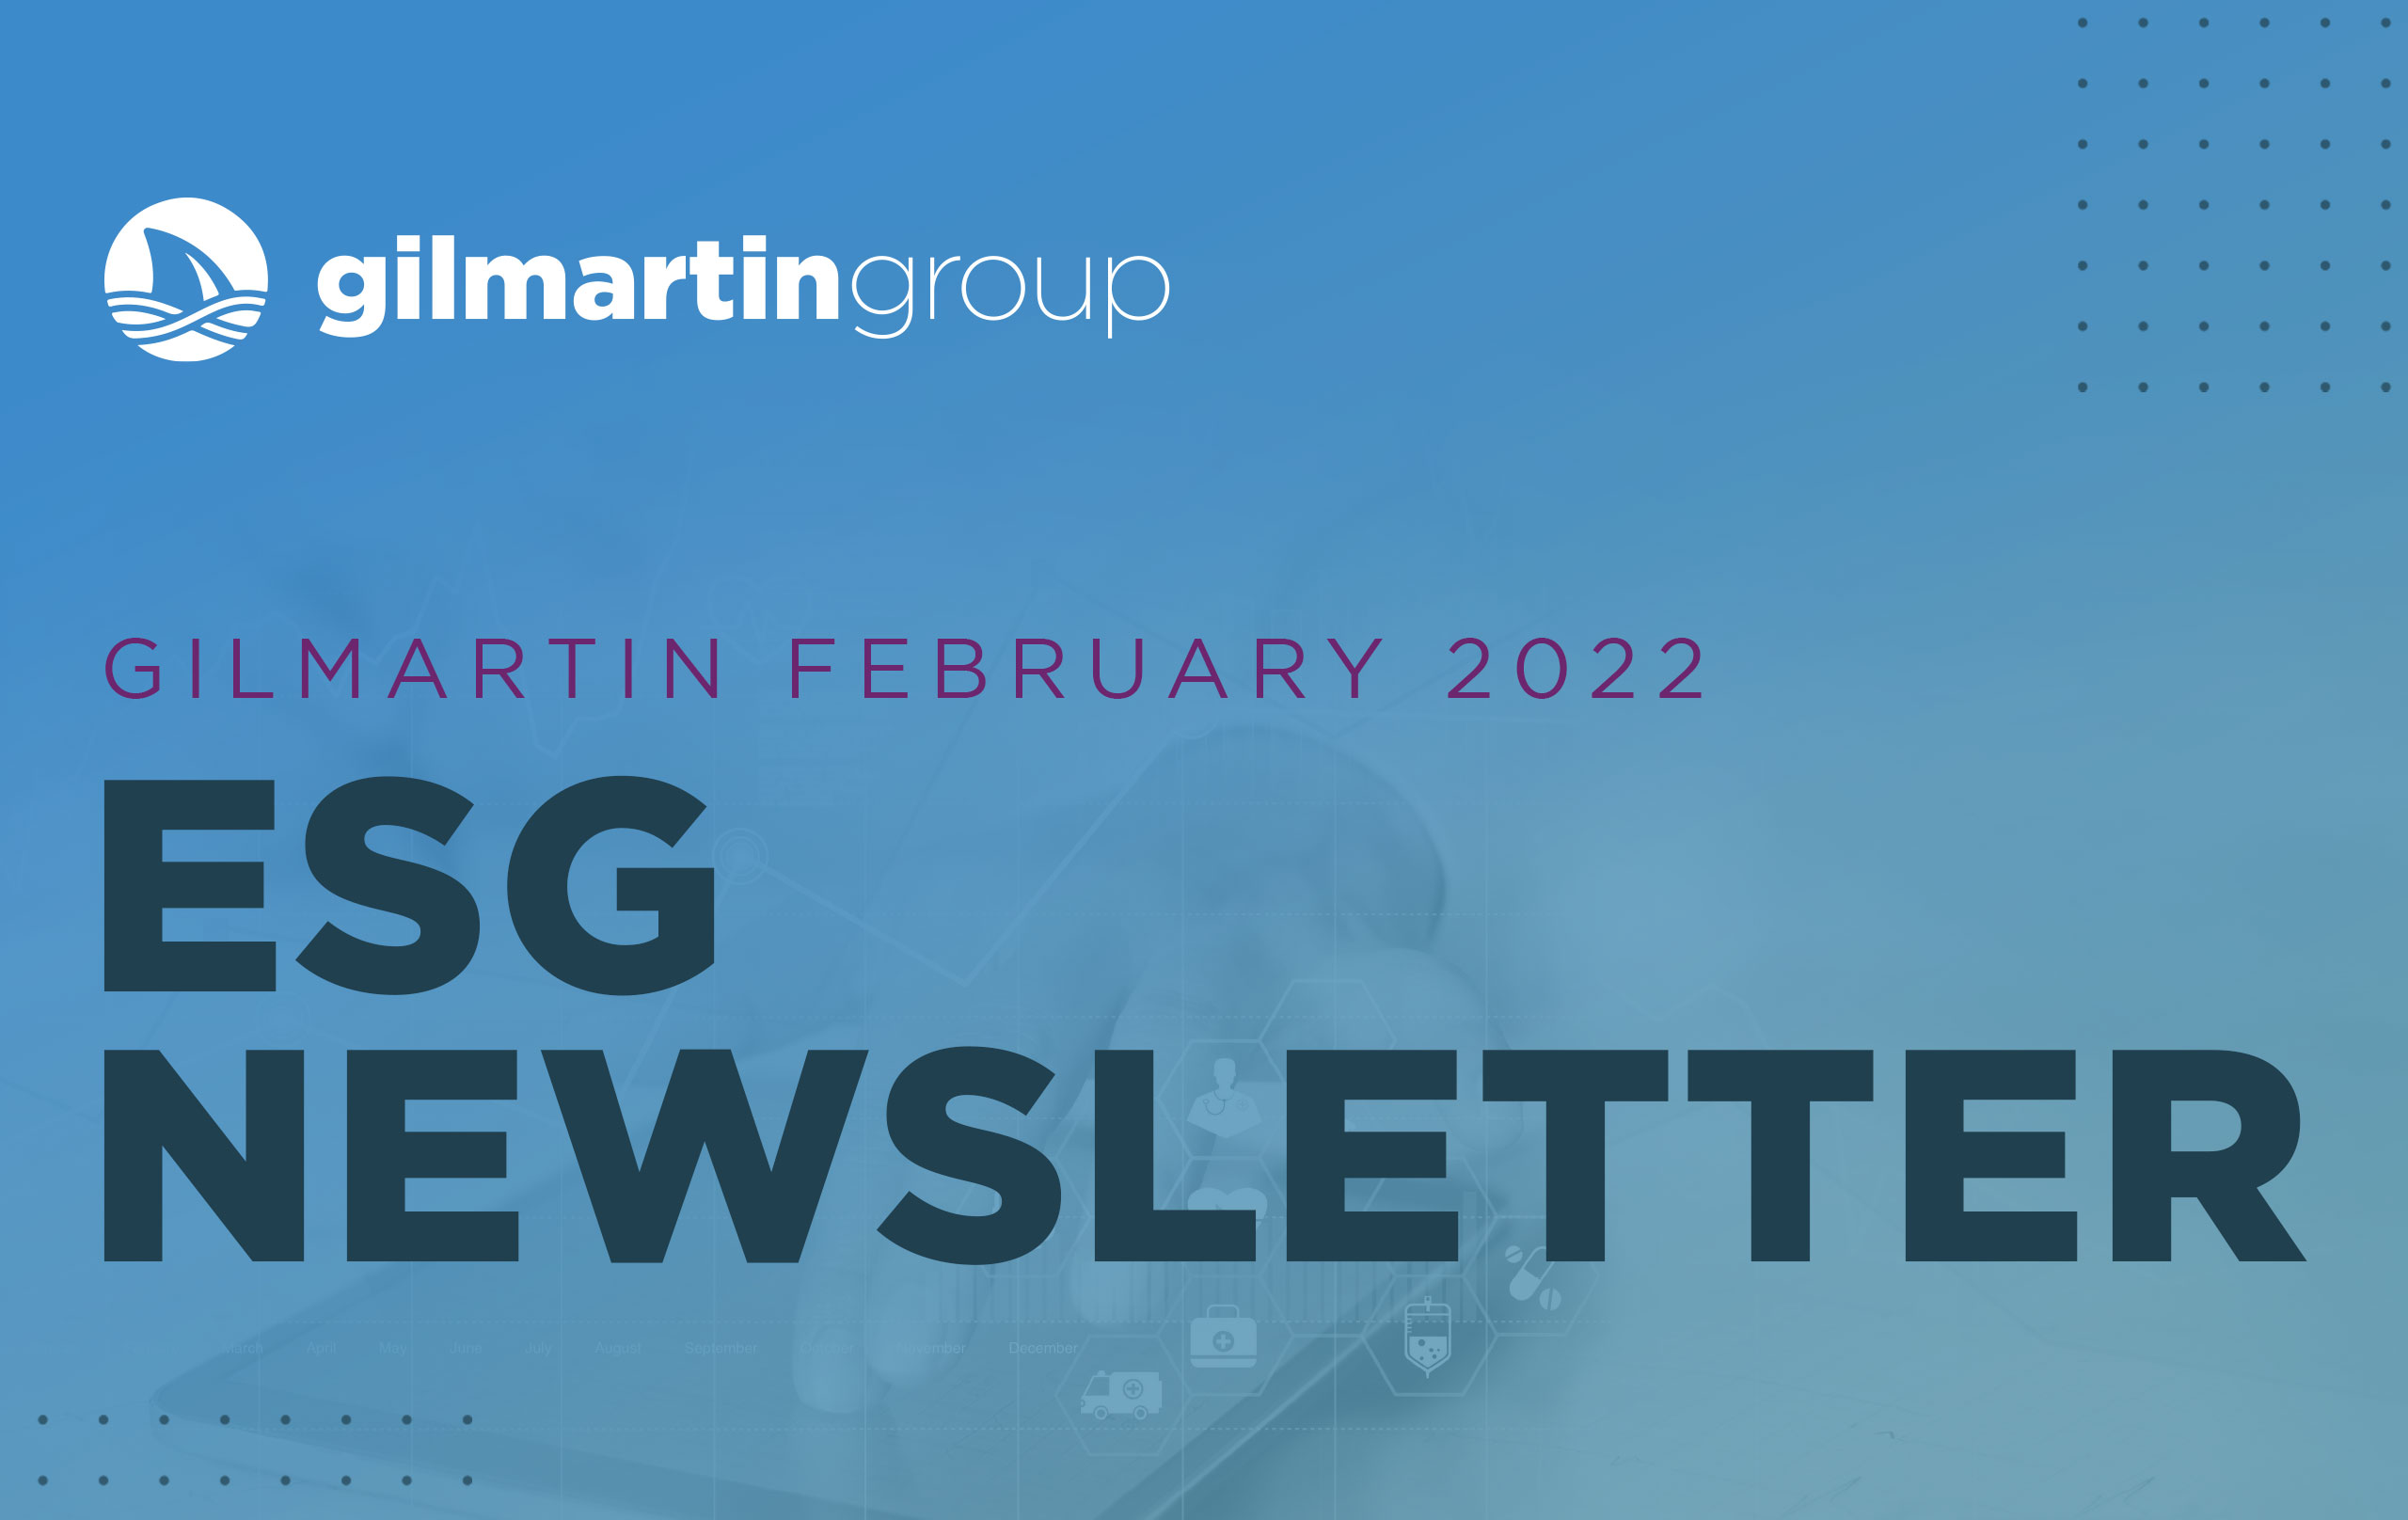 image for Gilmartin Group ESG Newsletter February 2022